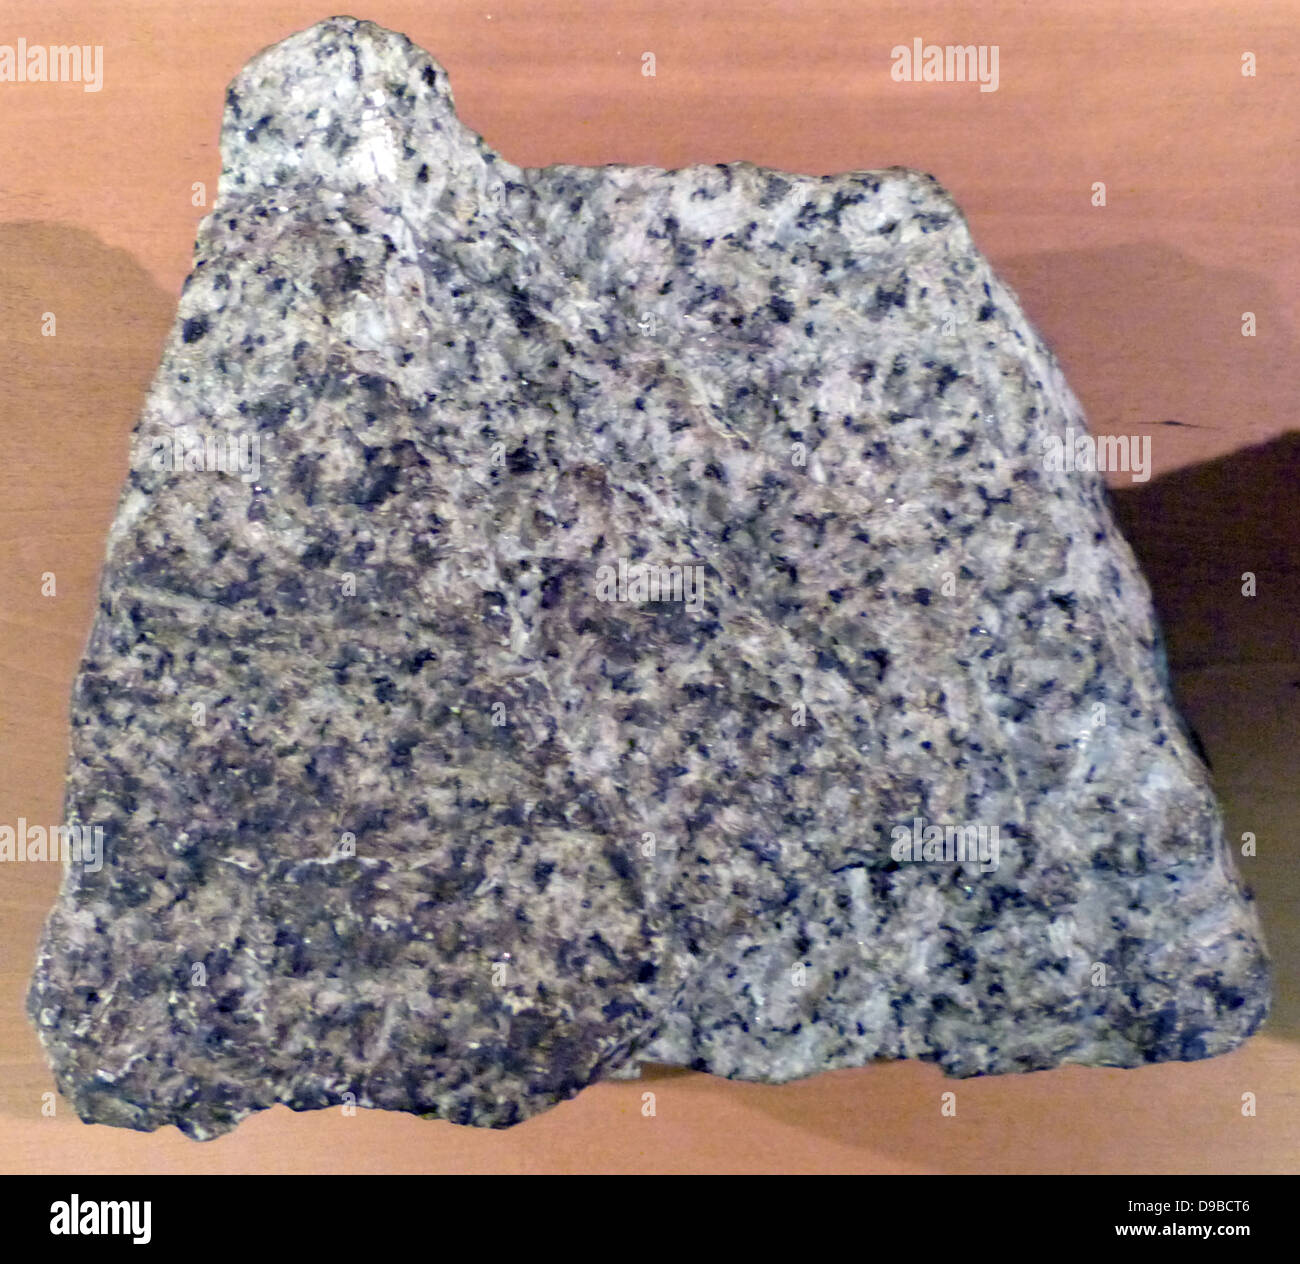 Granit - ist eine häufige und weit verbreitete vorkommende Art der aufdringlichen, Felsic, eruptivgestein. Granit hat normalerweise einen grobkörnigen Textur. Gelegentlich einige einzelne Kristalle sind größer als die Groundmass, in diesem Fall die Textur ist bekannt als Porphyritic. Stockfoto